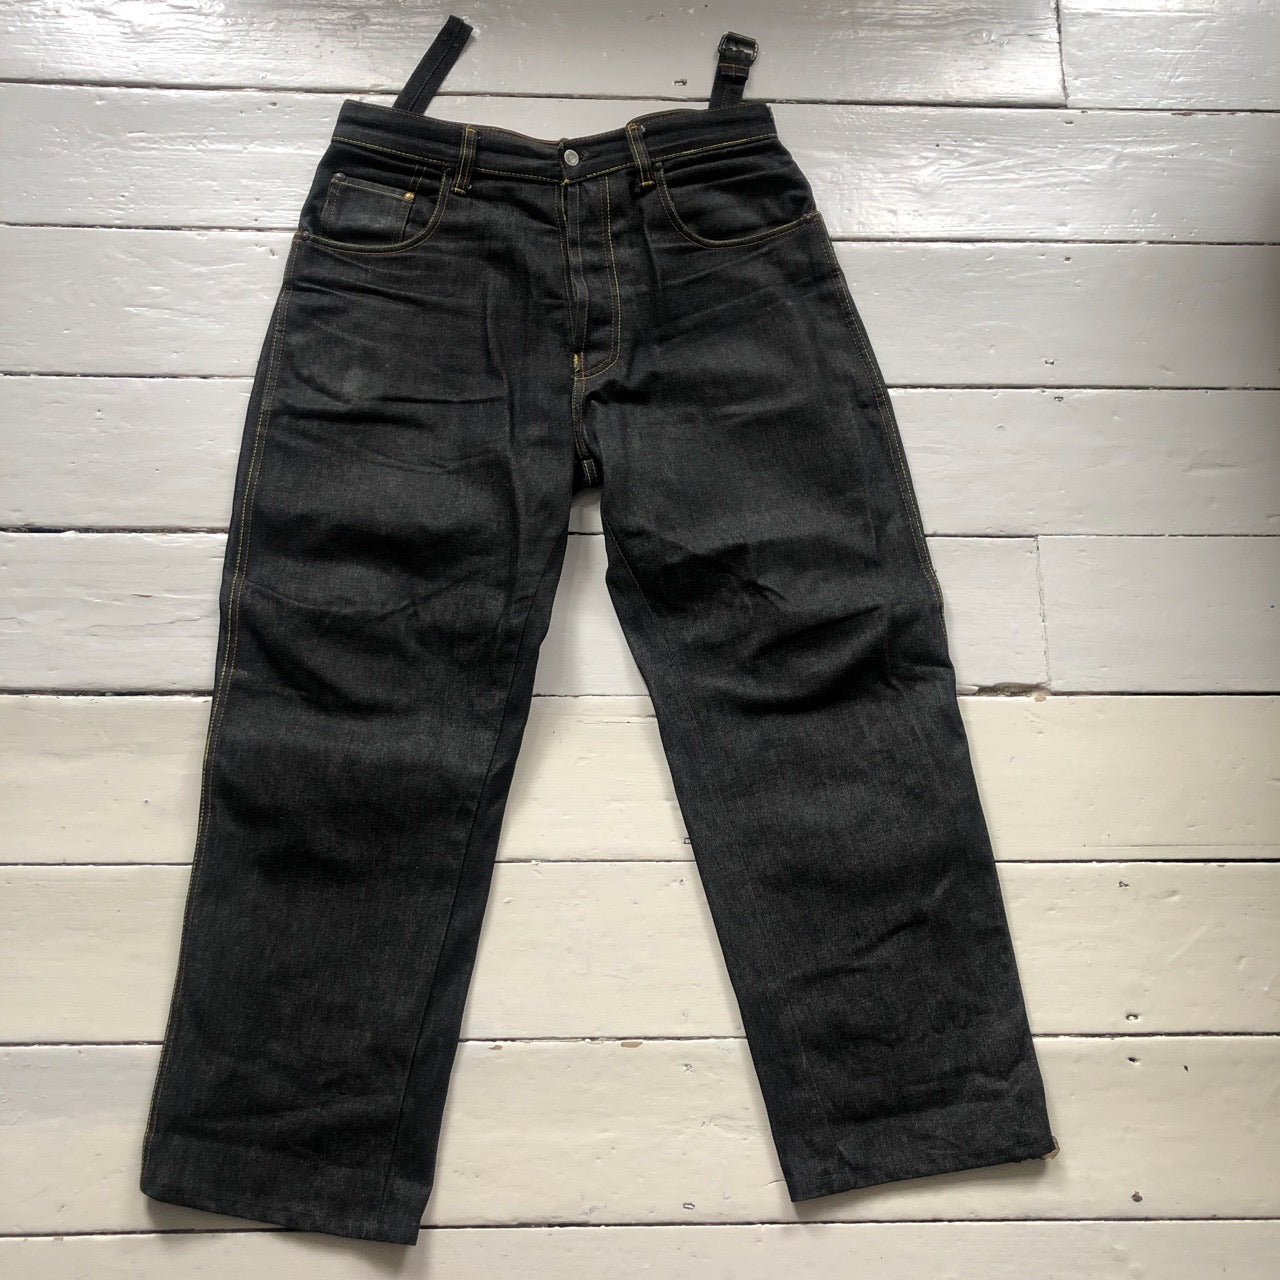 Evisu Big Swoosh Black Jeans (34/30)